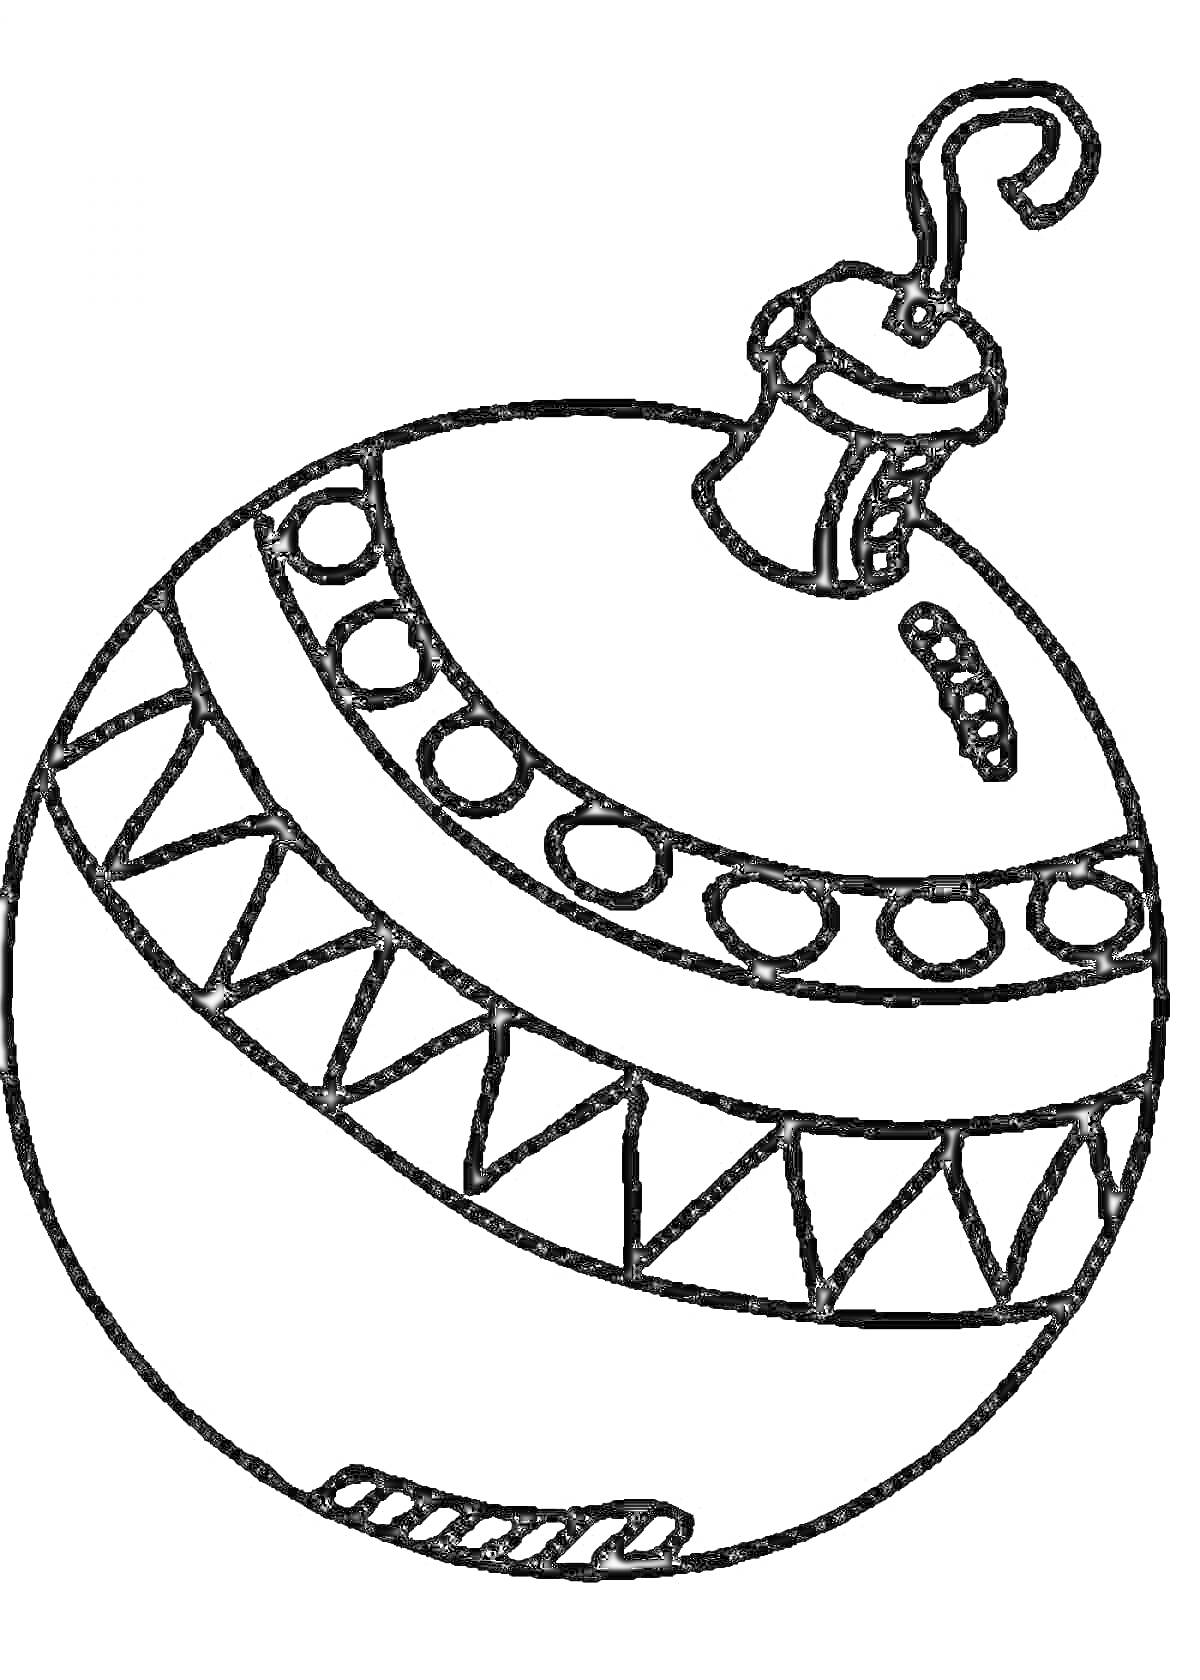 Раскраска новогодний шарик с декоративными полосами в кружочек и треугольник на подвеске